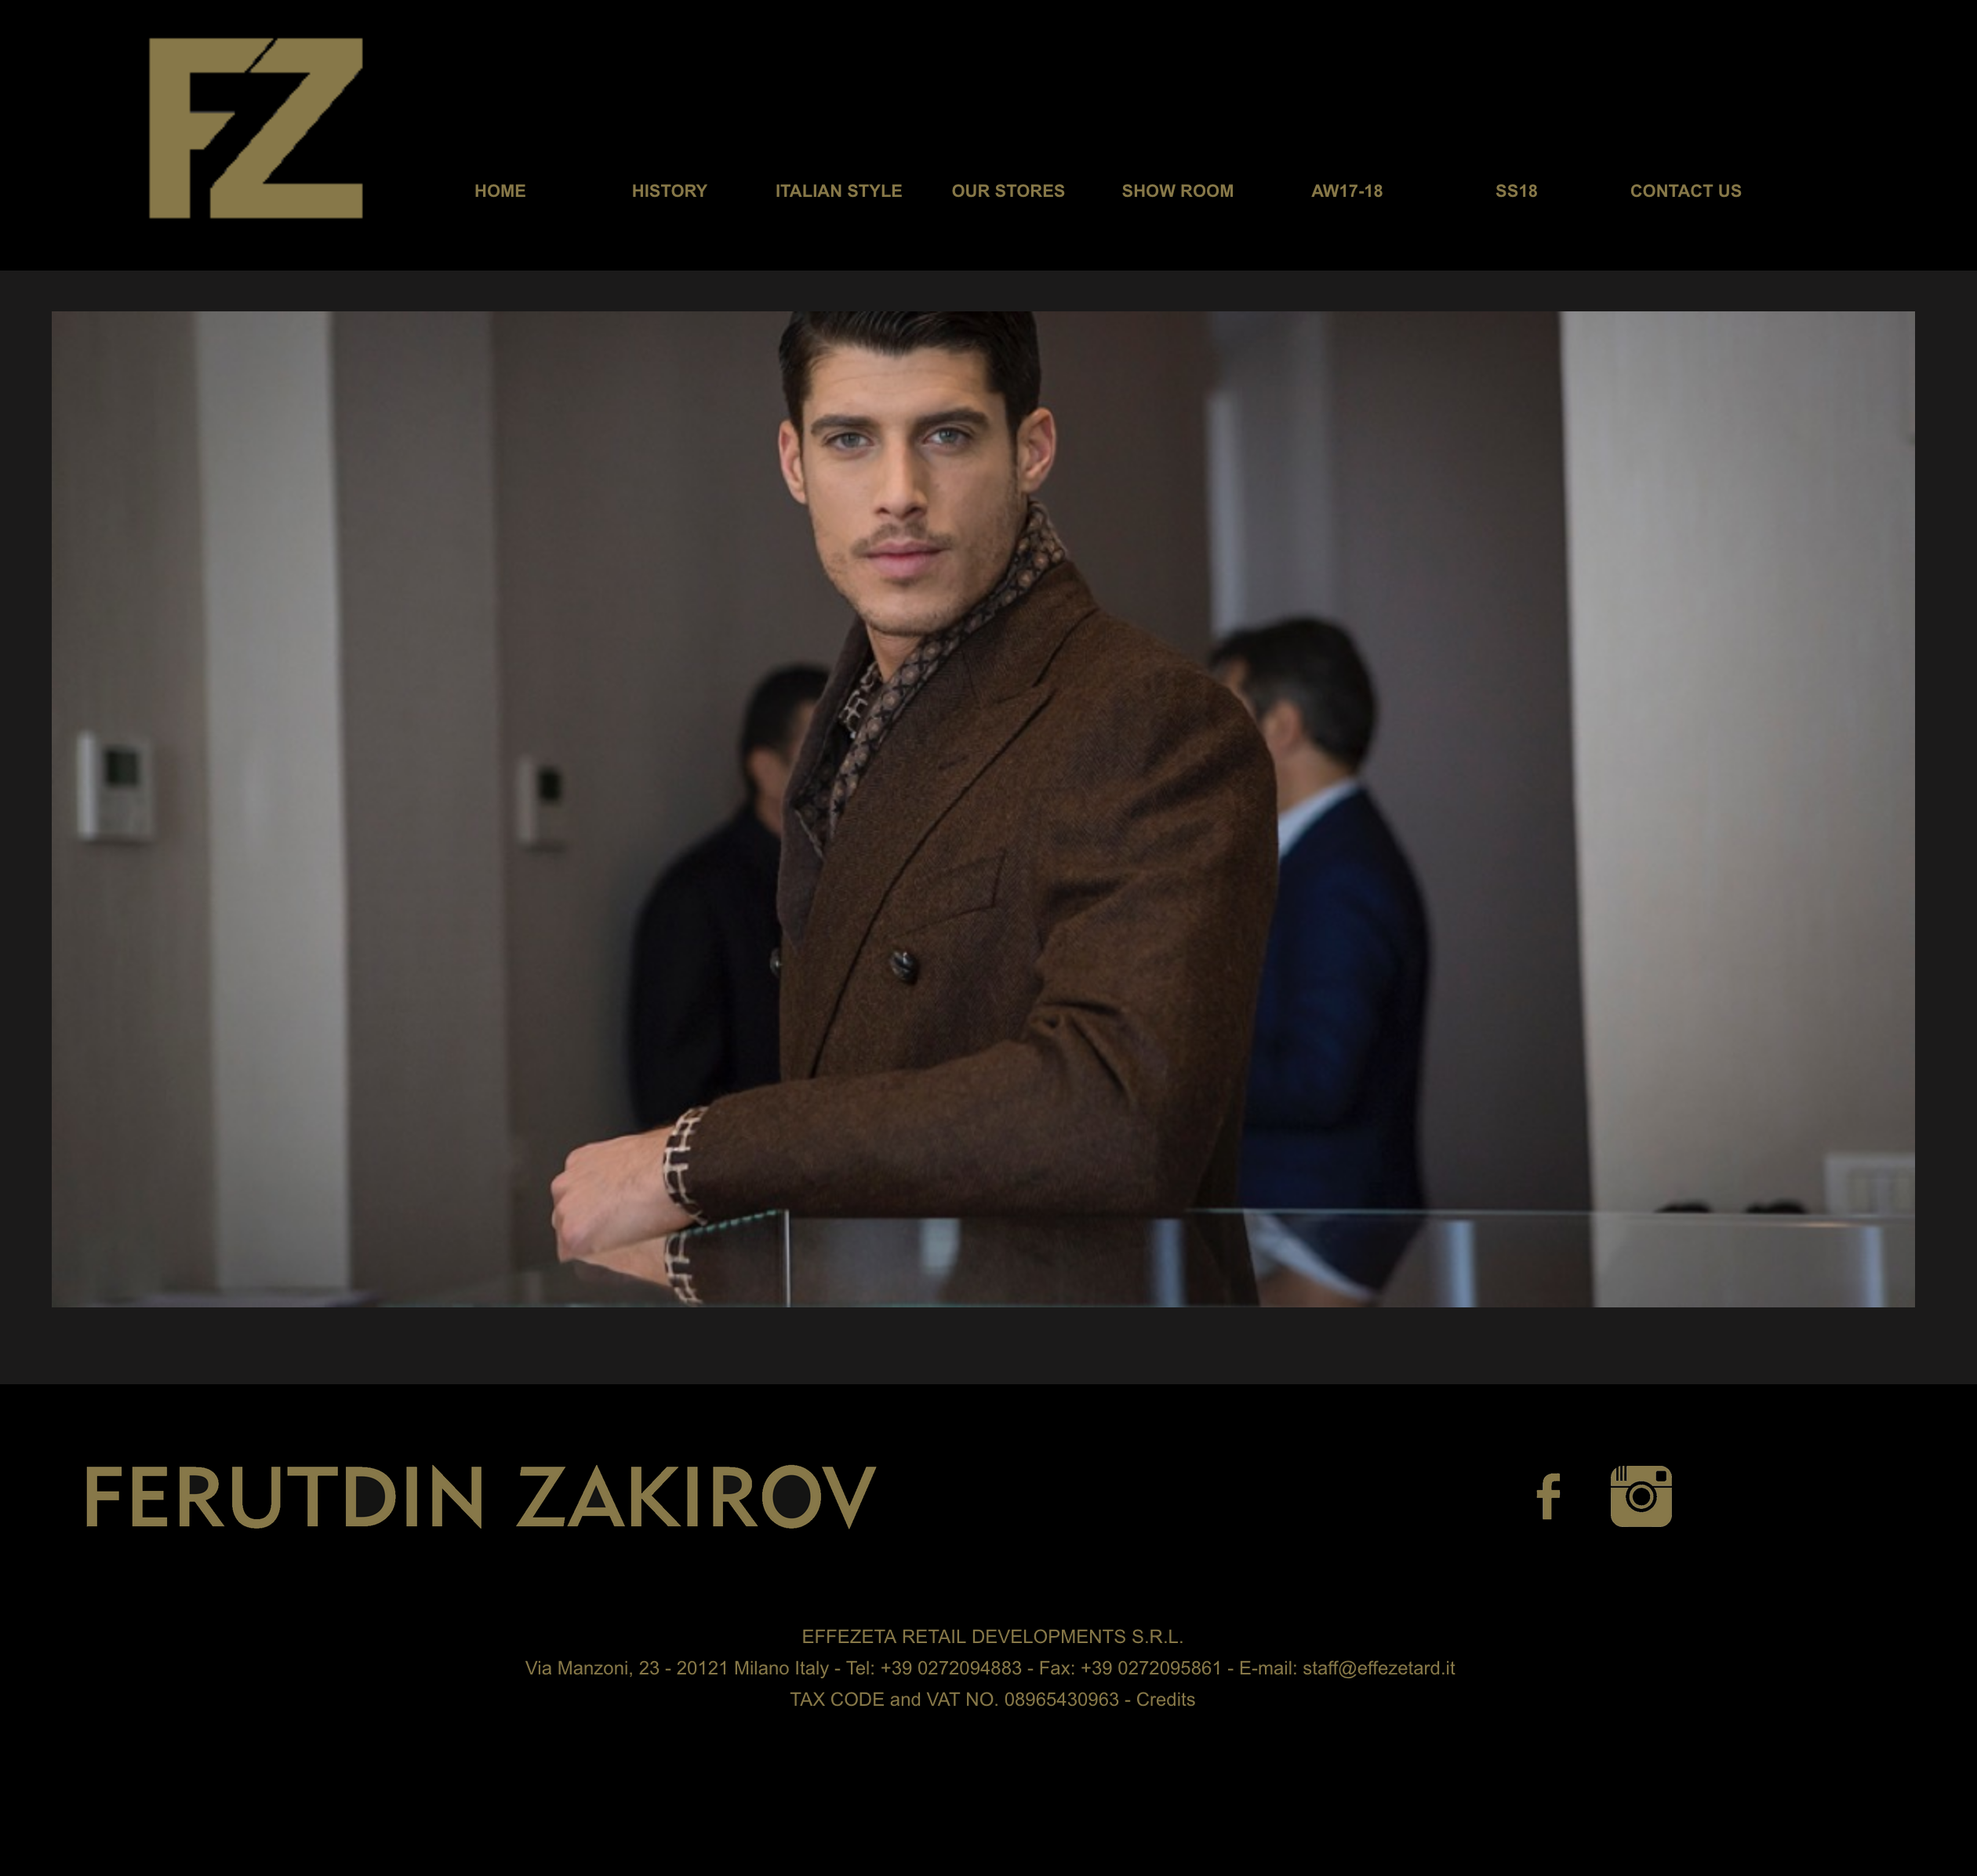 Ferutdin Zakirov - Sito Web realizzato da Koncept Srls